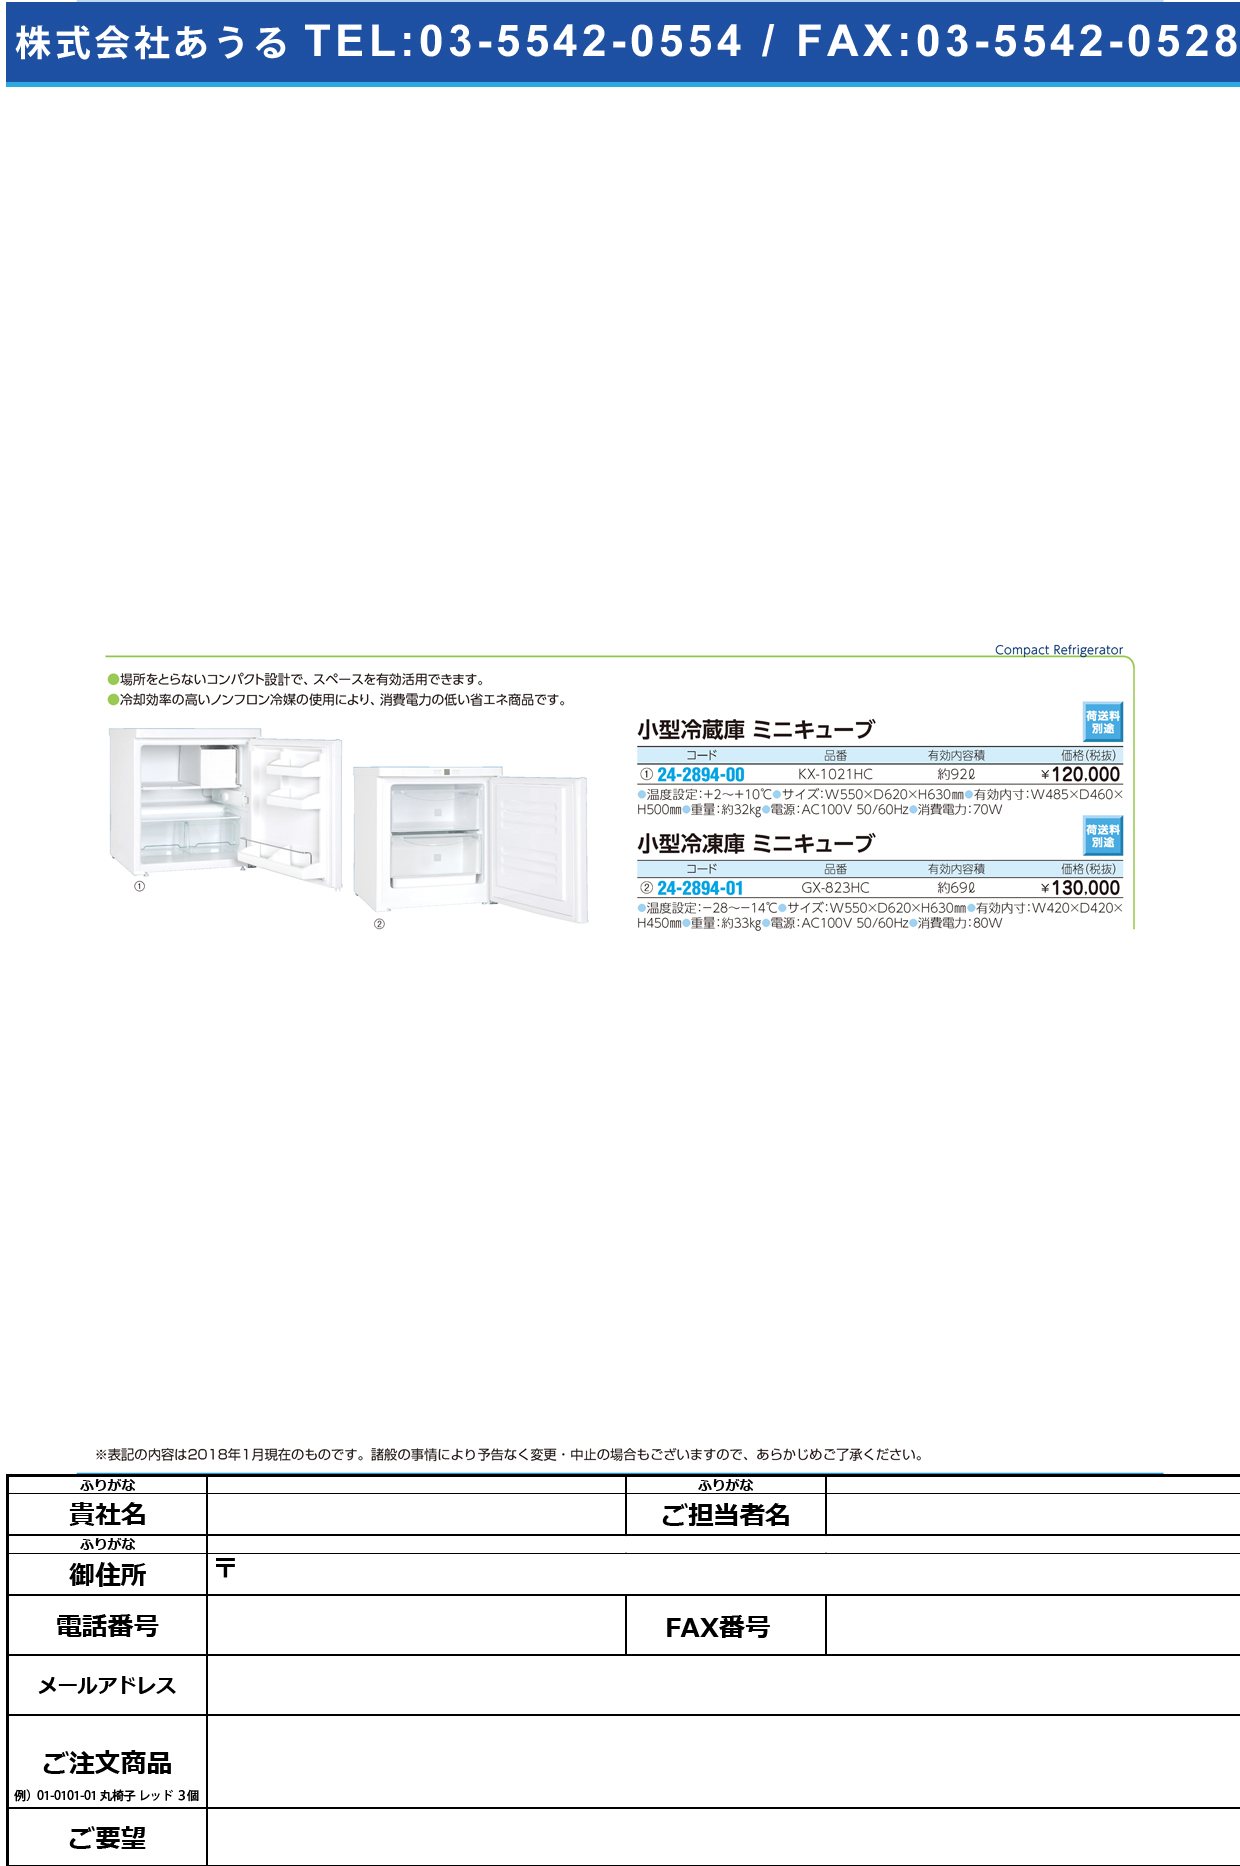 (24-2894-01)小型冷凍庫ミニキューブ GX-823HC(69L) ｺｶﾞﾀﾚｲﾄｳｺﾐﾆｷｭｰﾌﾞ(日本フリーザー)【1台単位】【2018年カタログ商品】